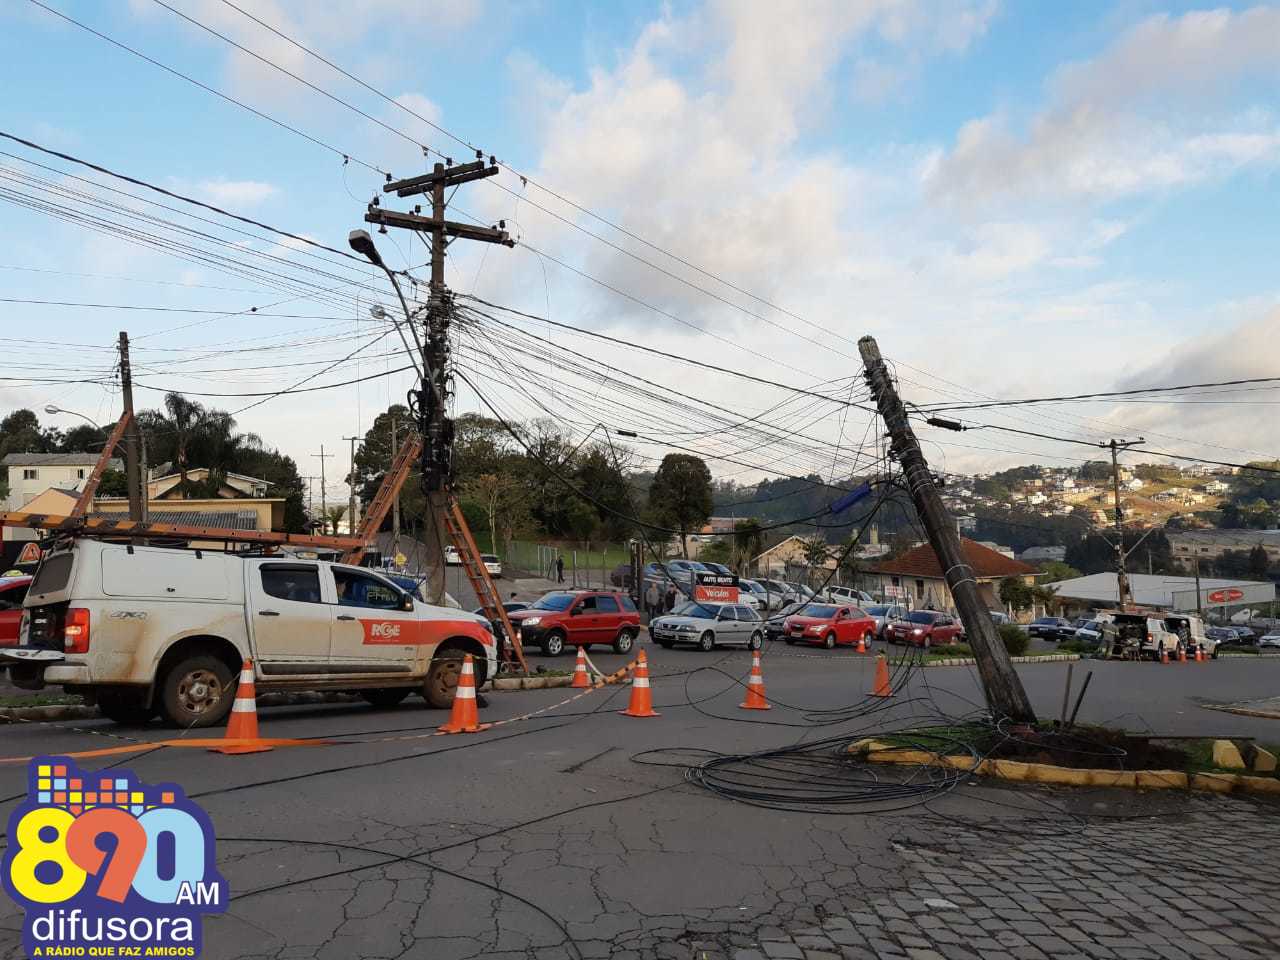 Incidente resulta em rompimento de fios e danos em poste no Botafogo em Bento